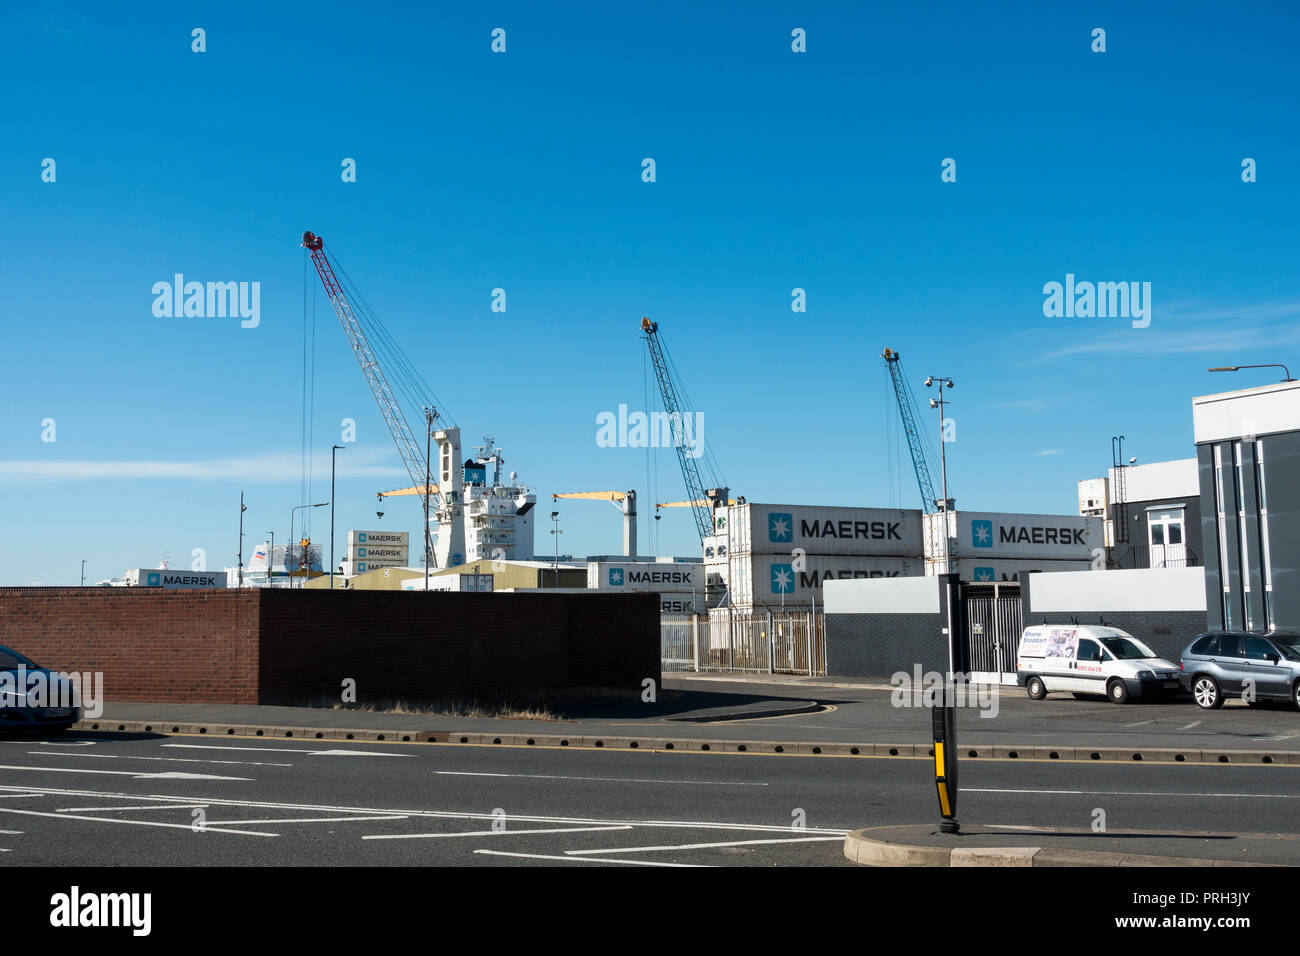 Les conteneurs de fret Maersk, port de Portsmouth, Angleterre, Royaume-Uni Banque D'Images